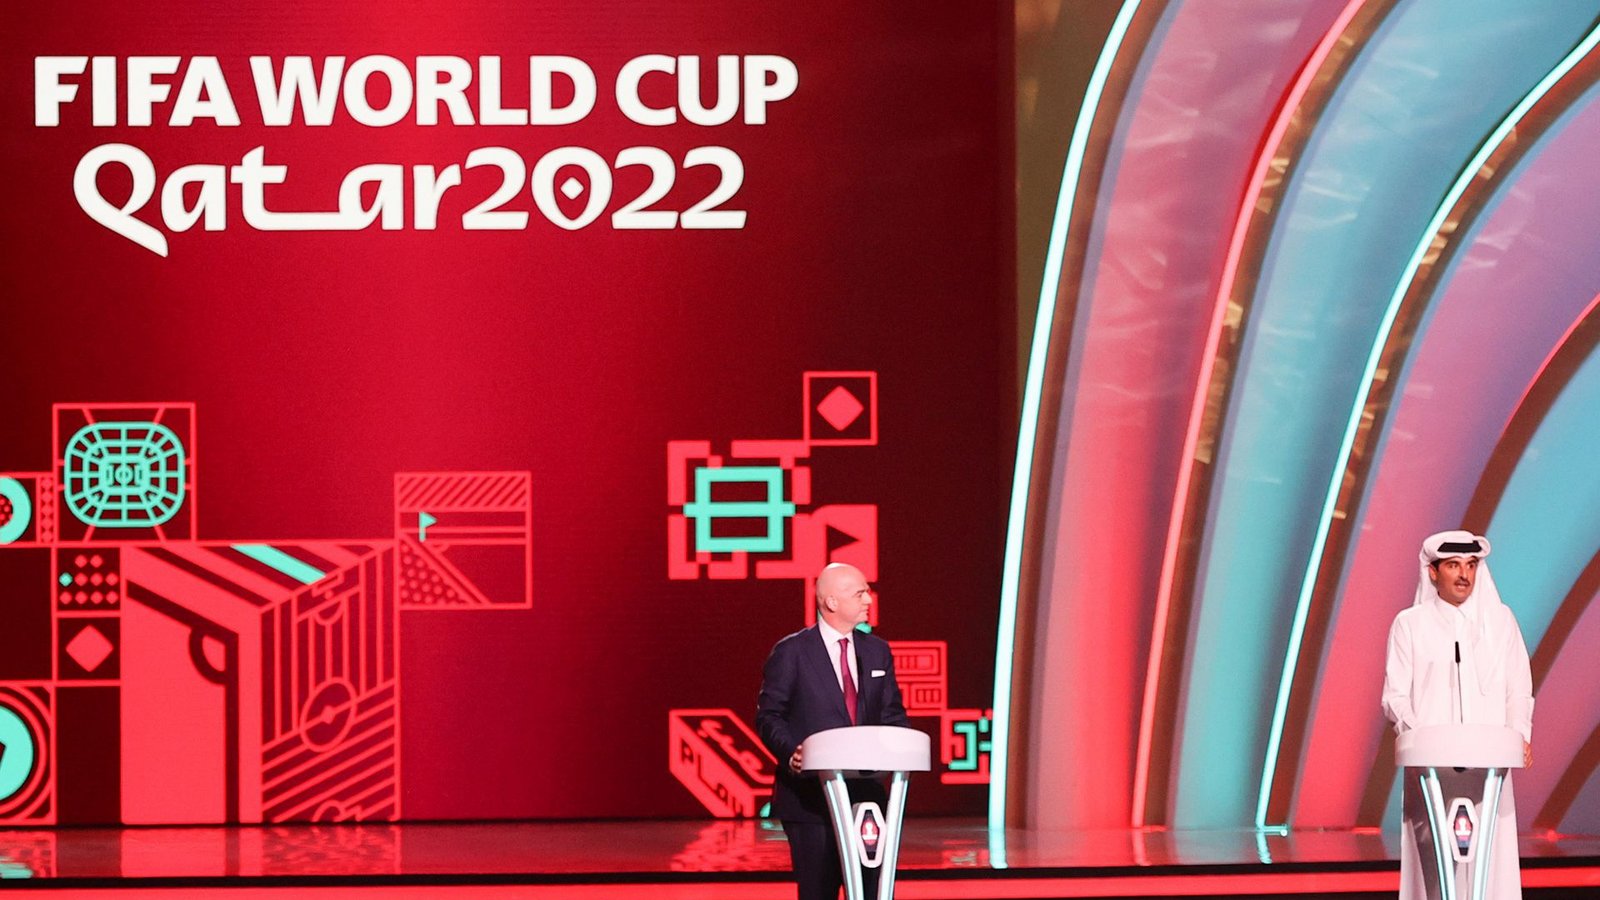 Die Fußball-WM findet 2022 in Katar statt.Foto: dpa/Christian Charisius